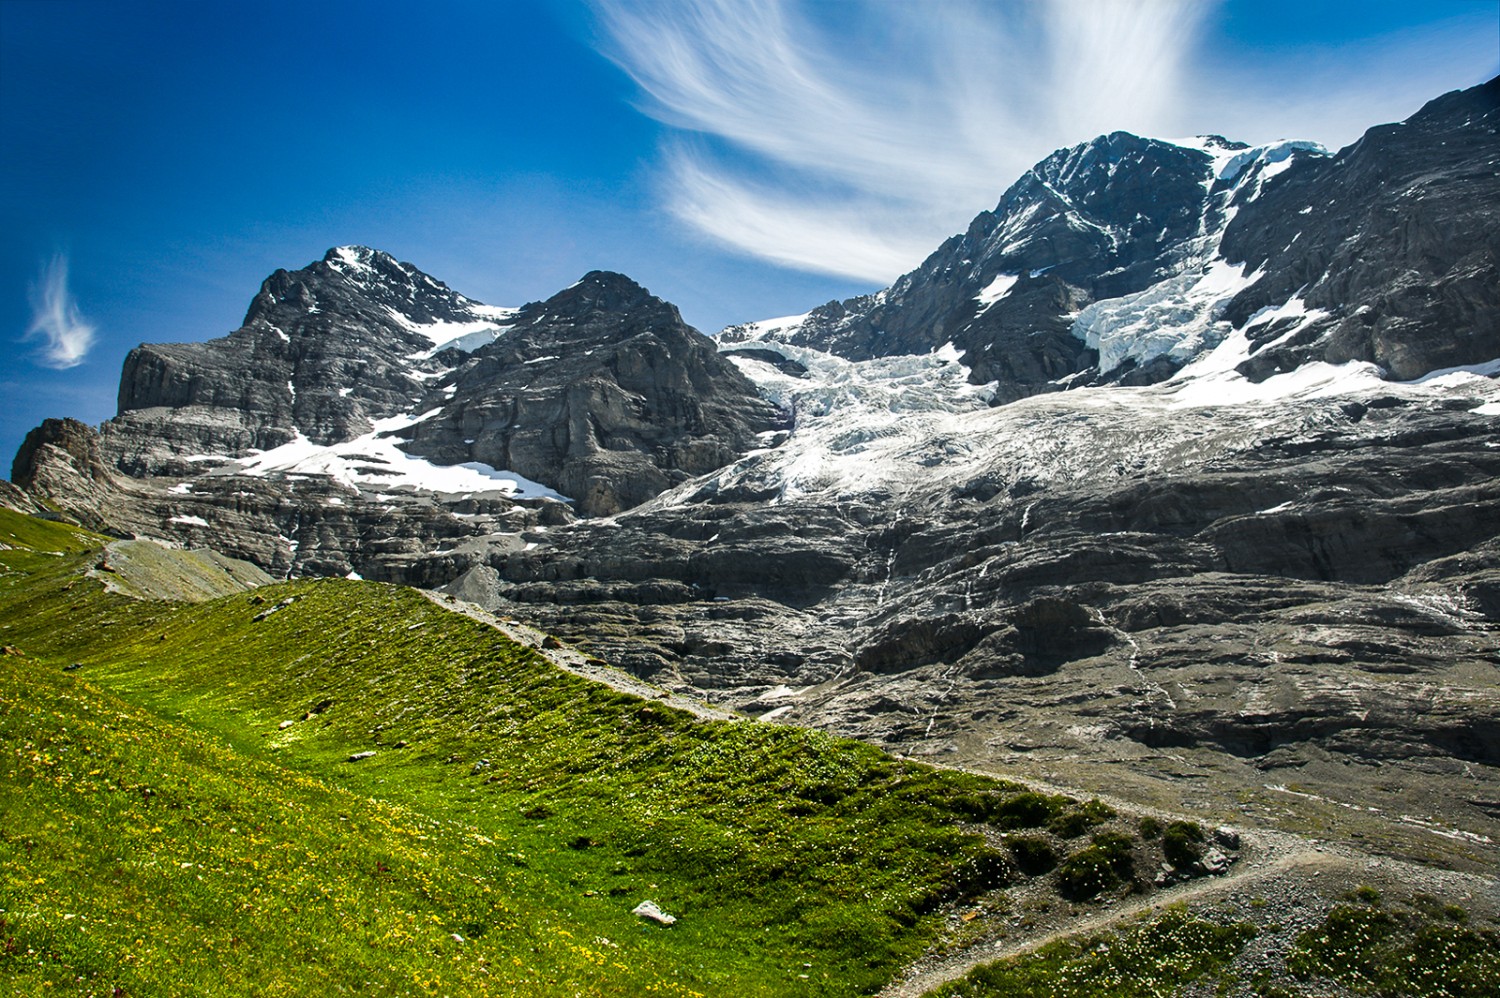 Le chemin entre Haaregg et le glacier de l’Eiger passe sur l’imposante moraine. En arrière-plan, le décor spectaculaire de l’Eiger et du Mönch. Photo: Evelyne Zaugg